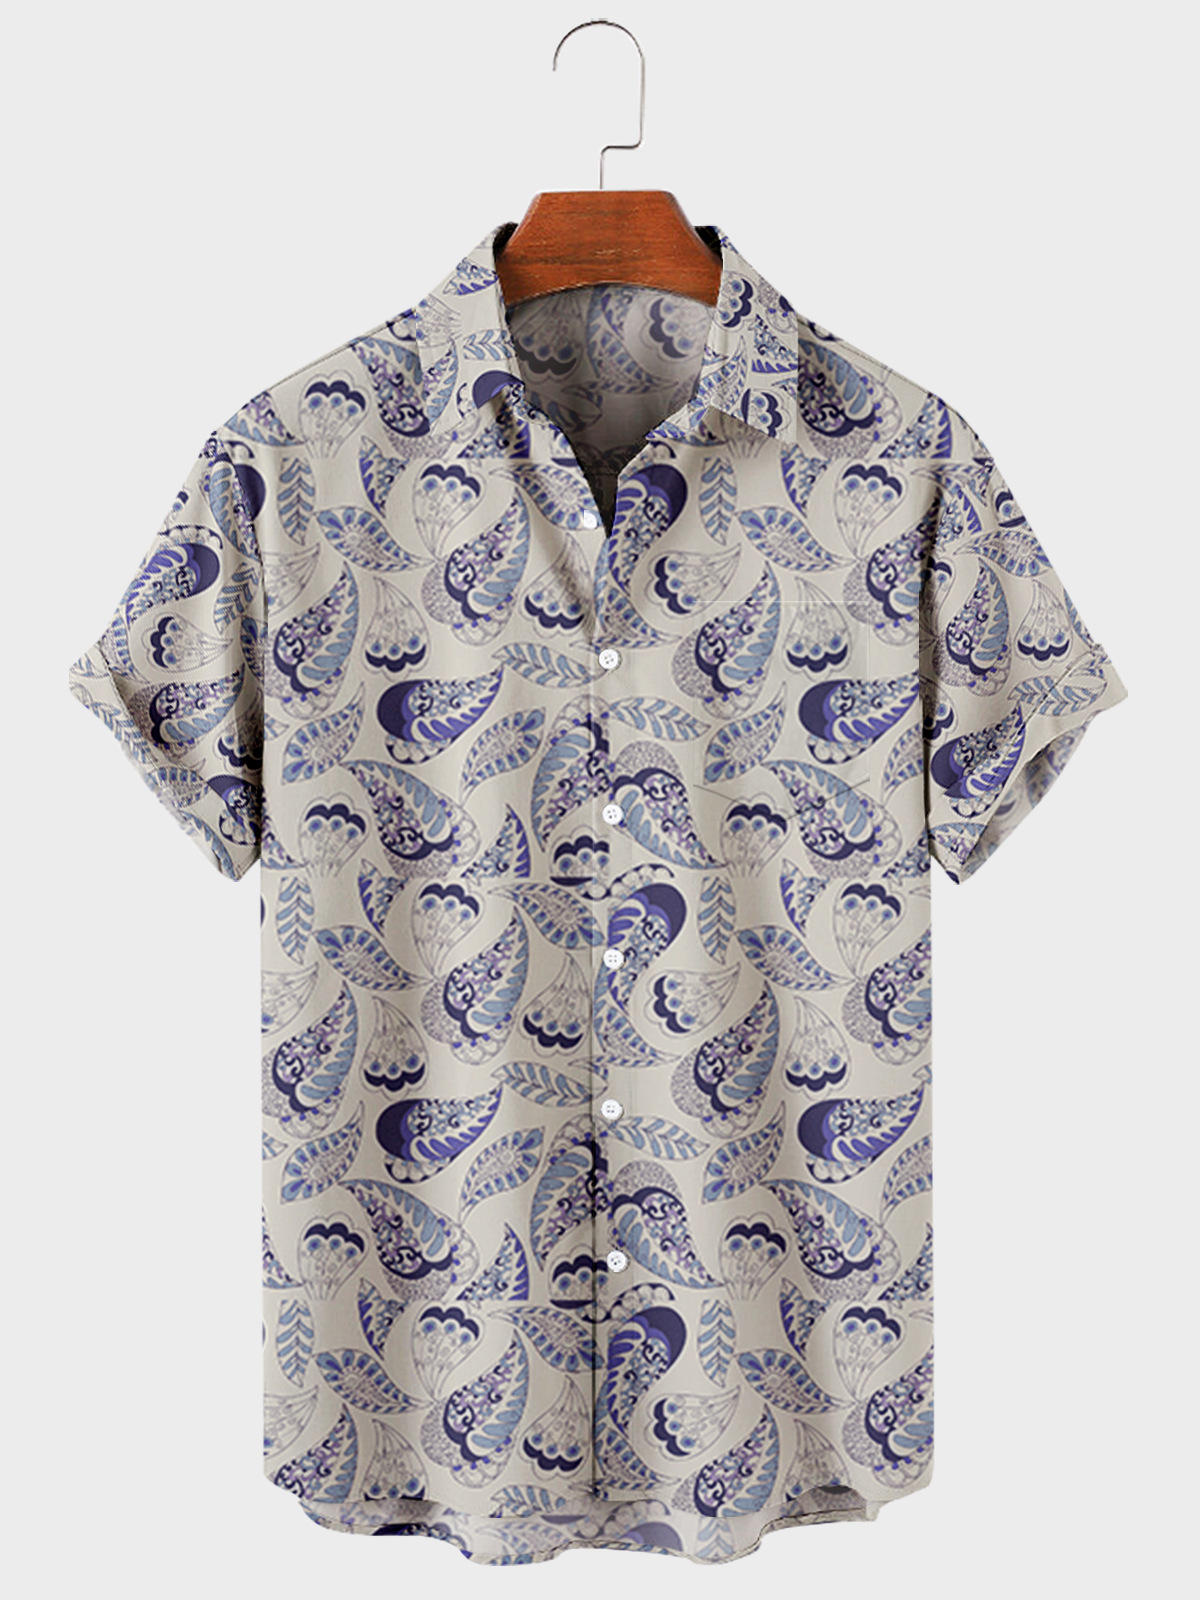 US$ 25.89 - Men's Aztec Cashew Flowers Pattern Vintage Short Shirt ...